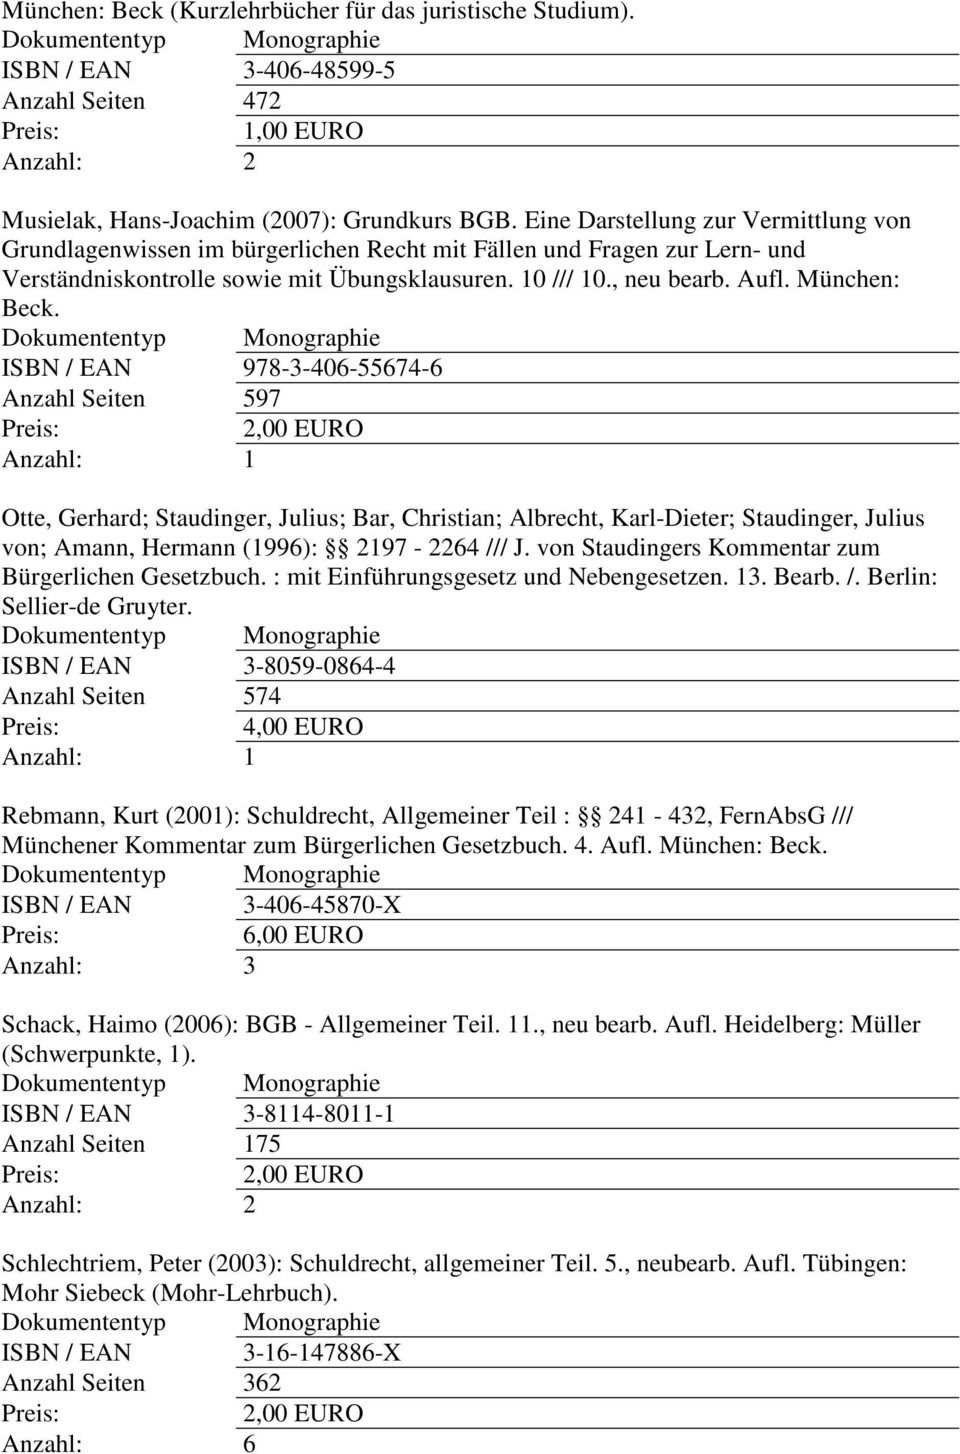 München: Beck. ISBN / EAN 978-3-406-55674-6 Anzahl Seiten 597 Otte, Gerhard; Staudinger, Julius; Bar, Christian; Albrecht, Karl-Dieter; Staudinger, Julius von; Amann, Hermann (1996): 2197-2264 /// J.